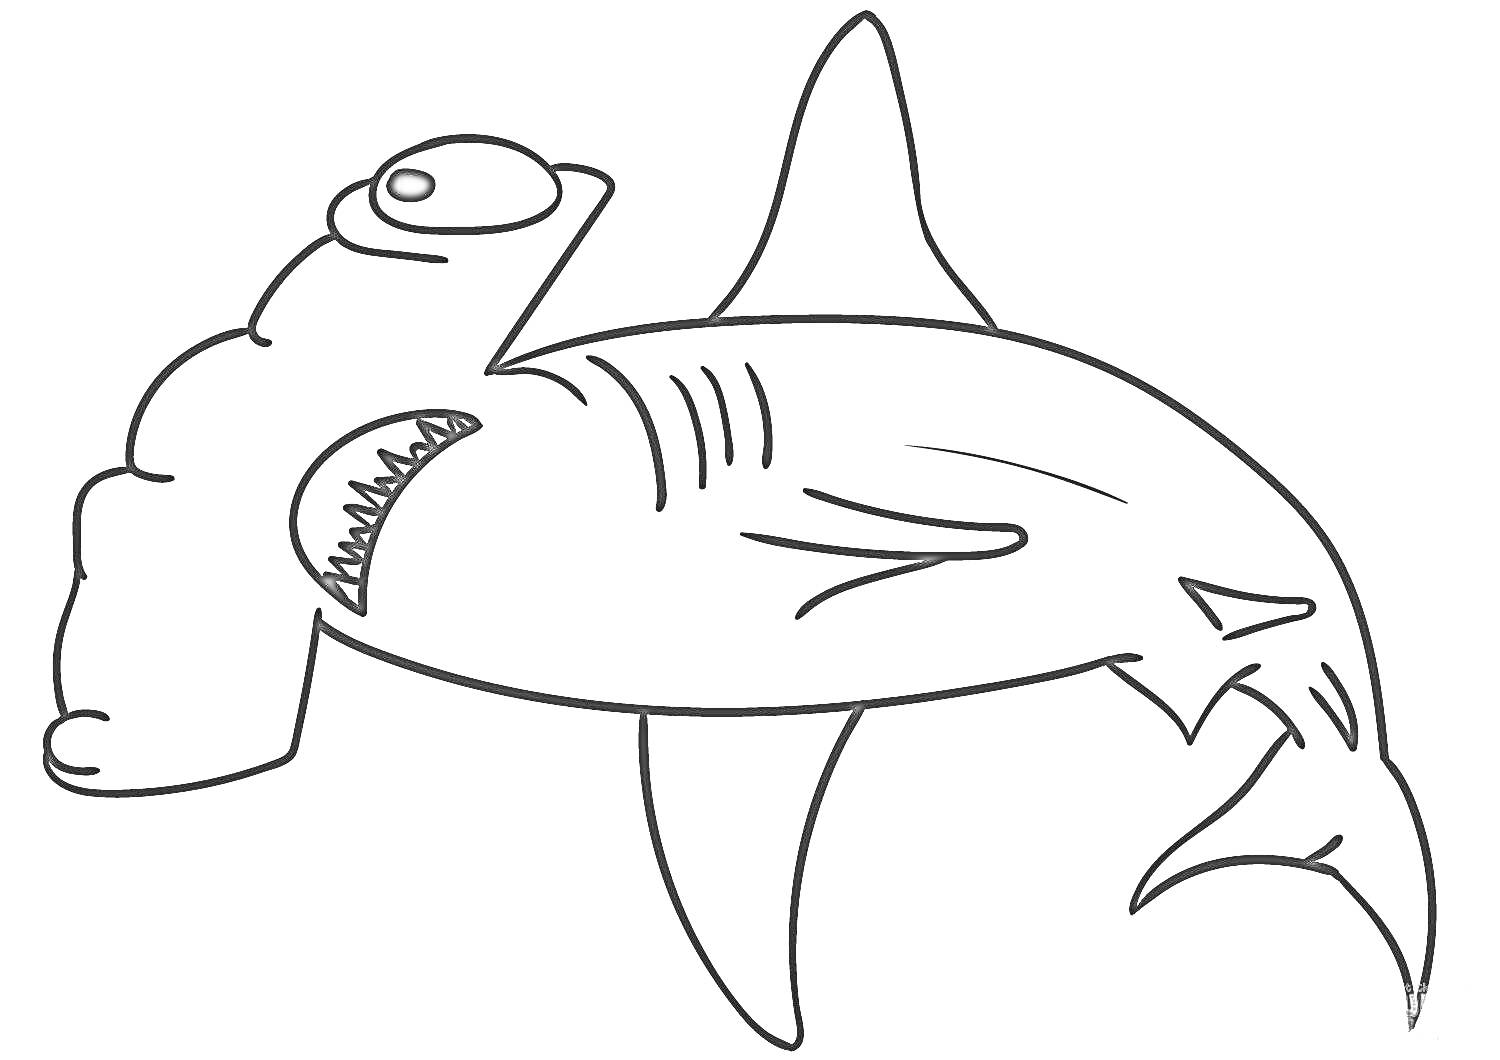 Раскраска Раскраска с изображением акулы-молота с плавниками и хвостом